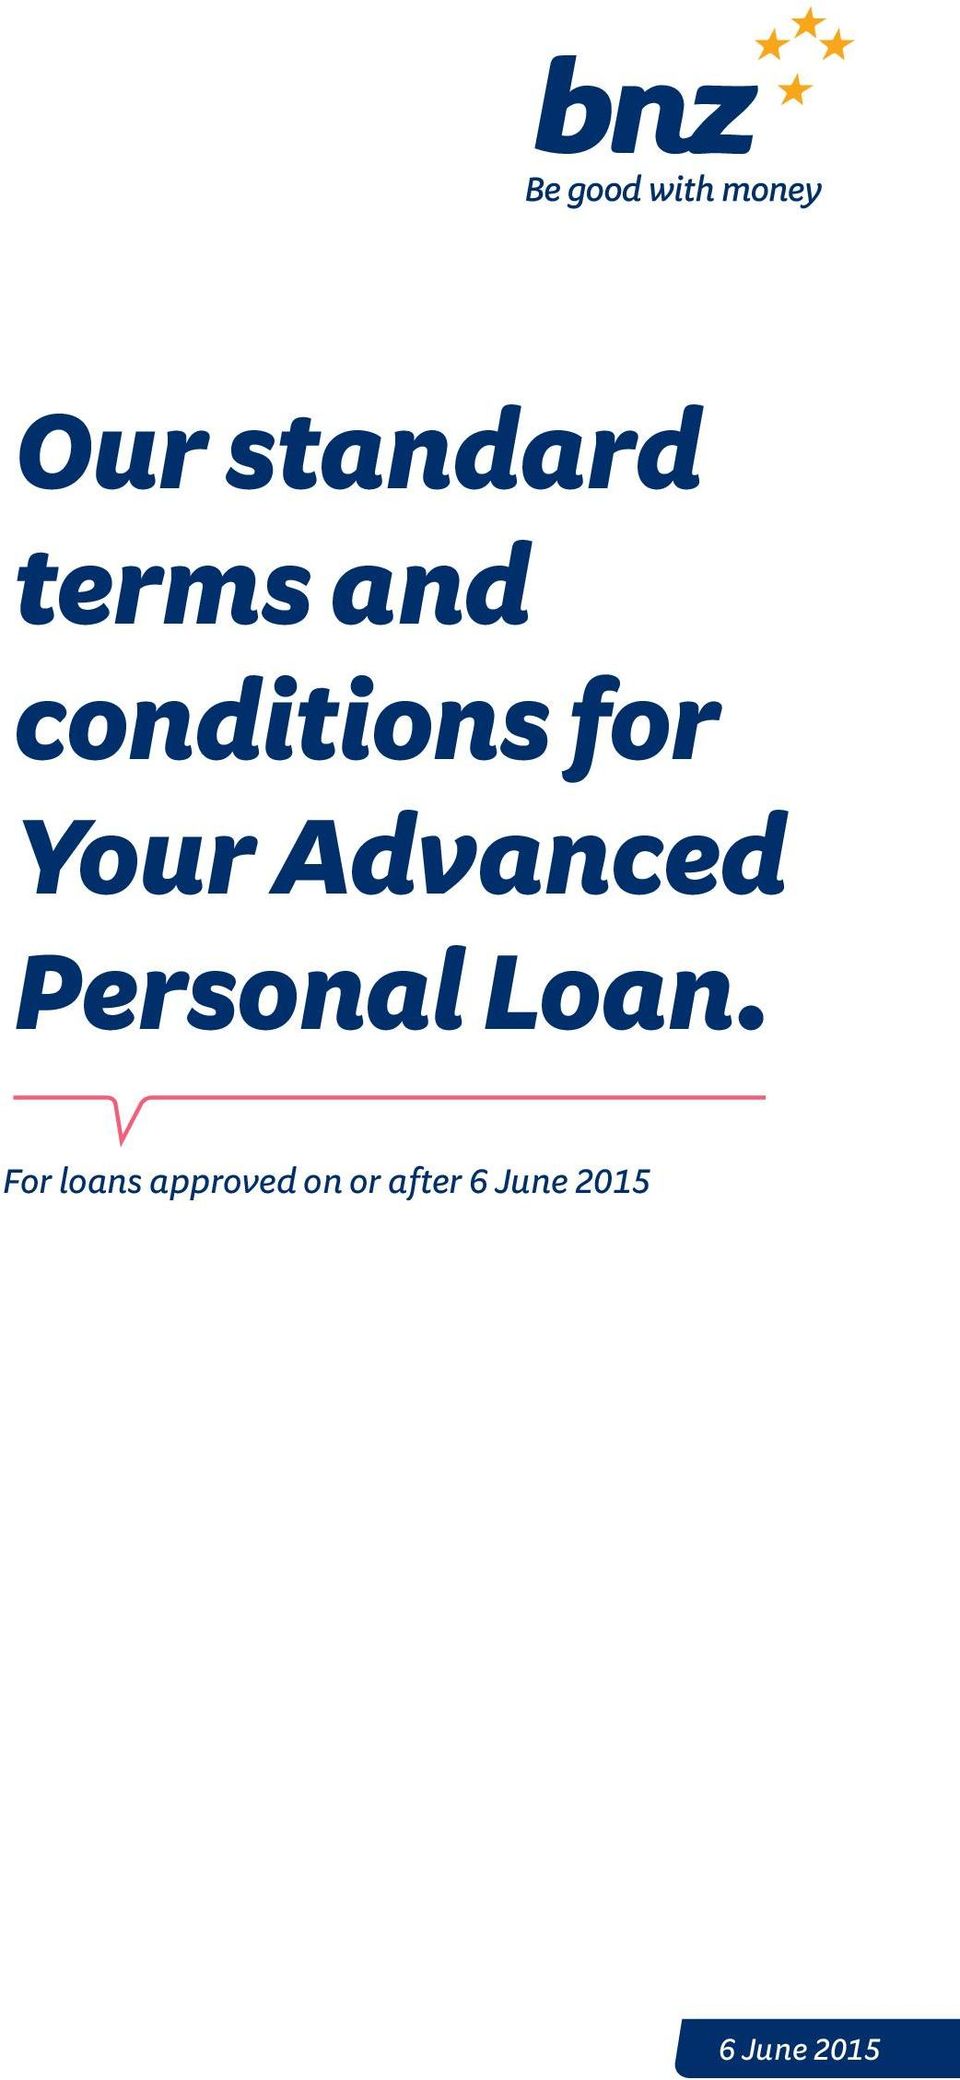 Personal Loan.